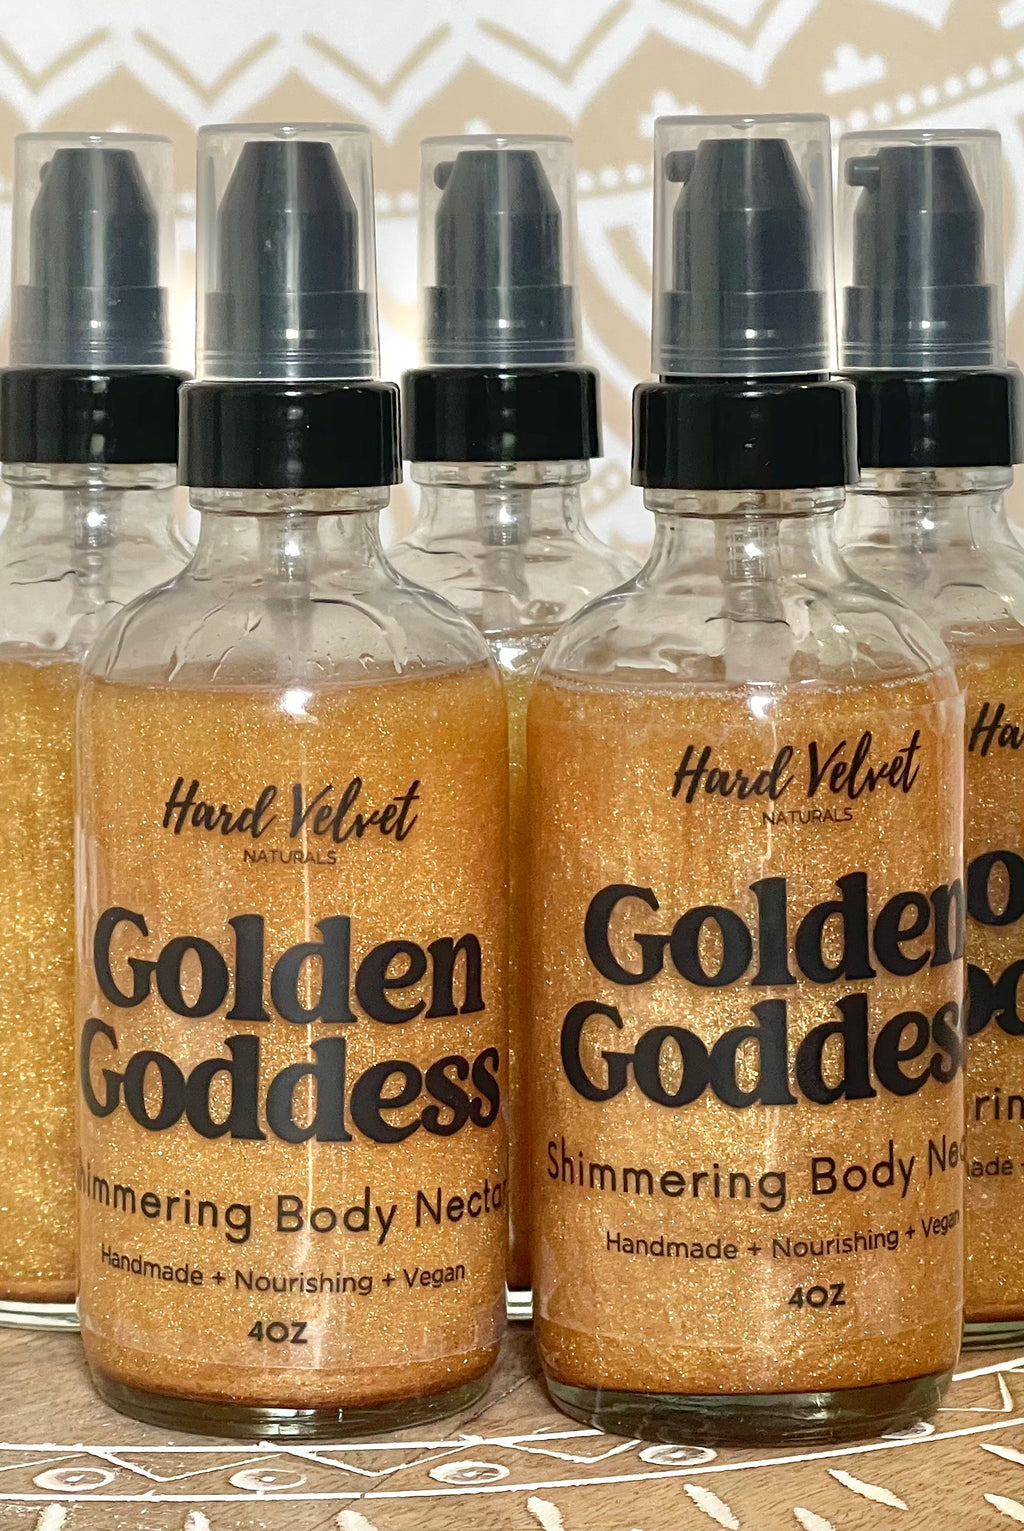 Golden Goddess Shimmering Body Nectar